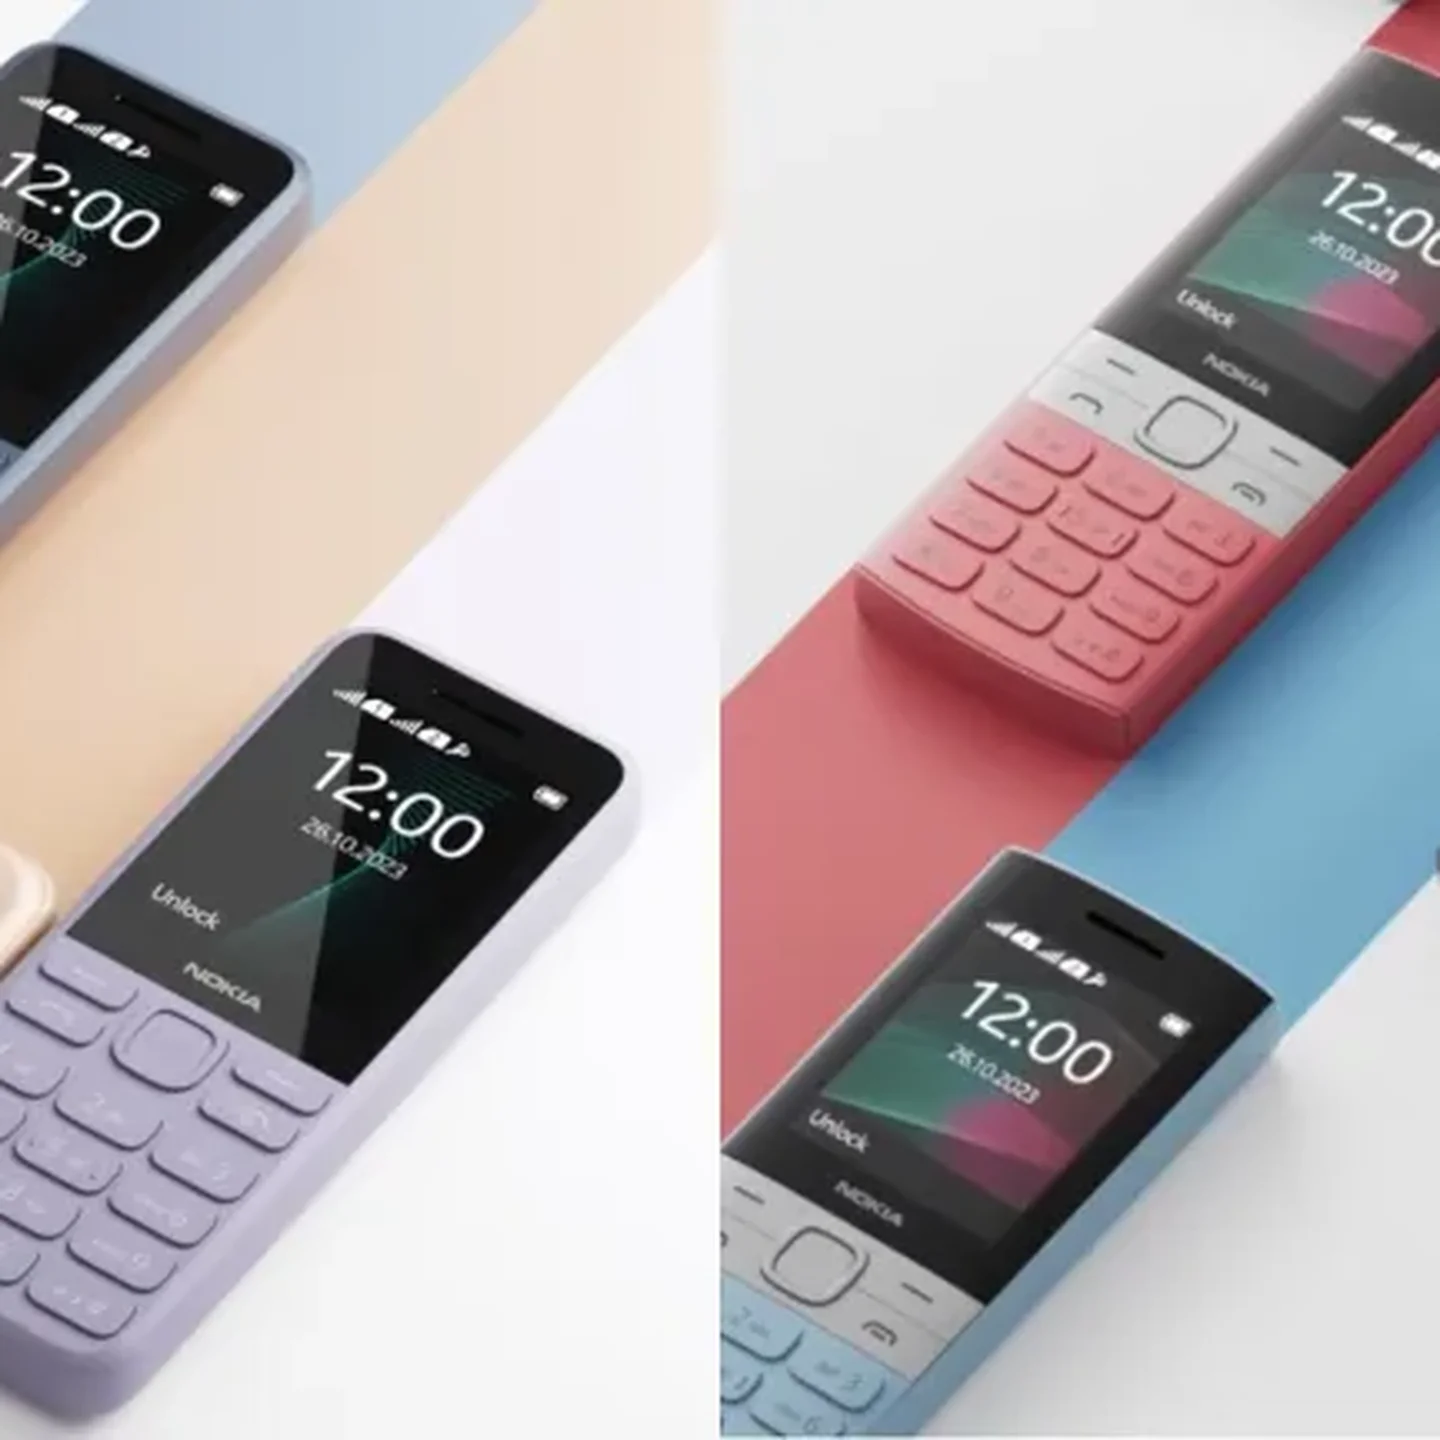 Batería extraíble, teclado físico, minijack y autonomía de un mes por 35  euros: así es el nuevo móvil básico de Nokia